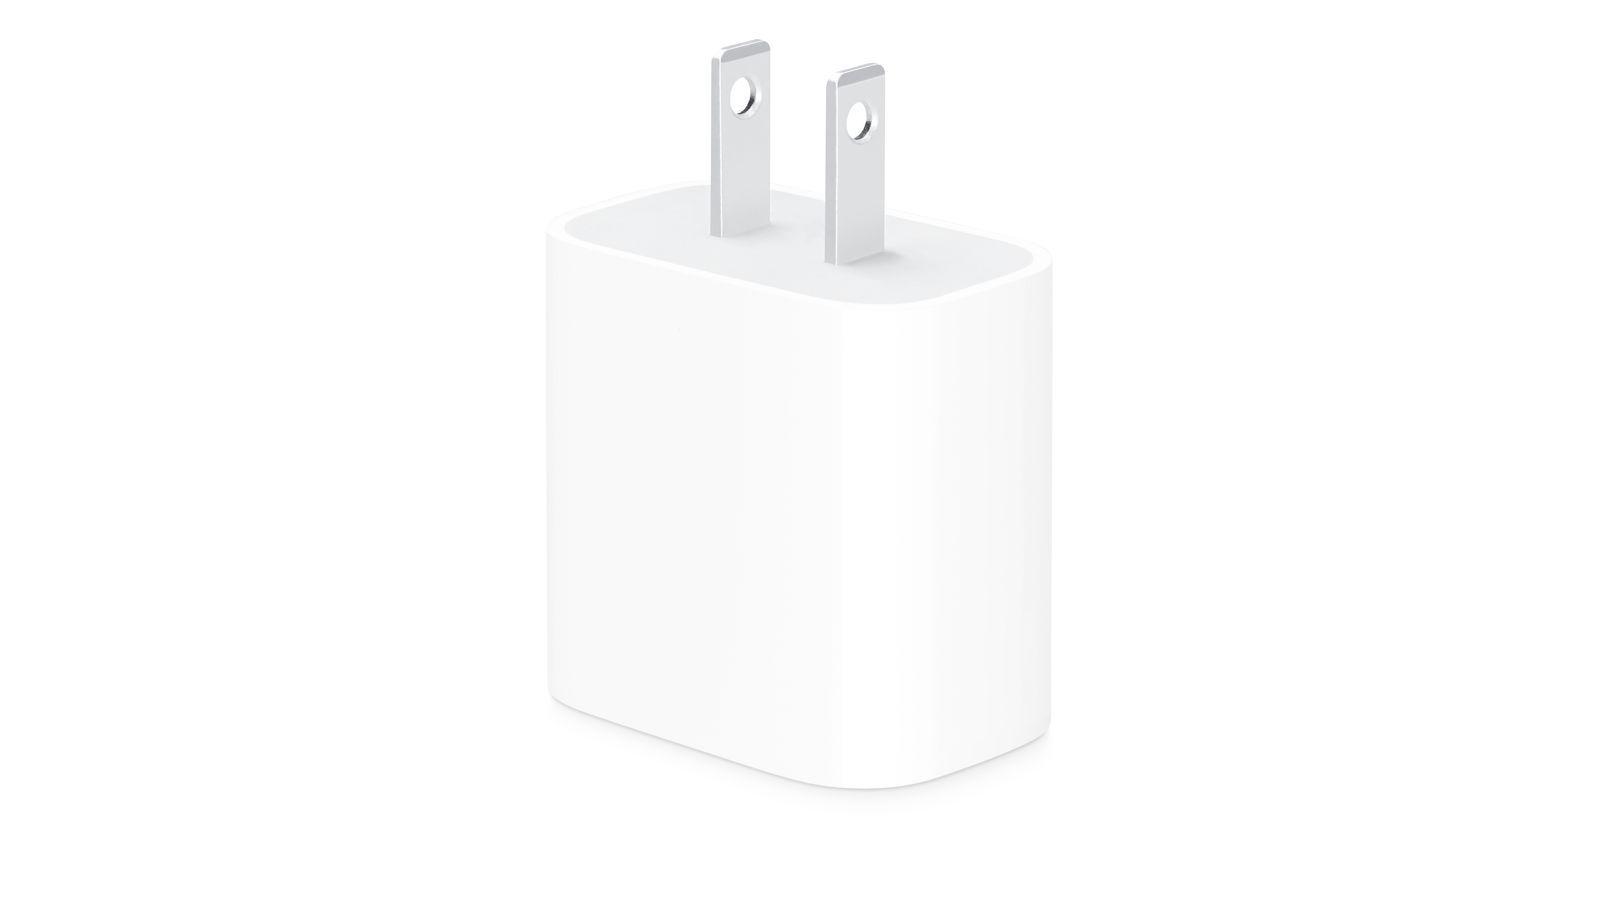 Oferty: Nowa wyprzedaż Woot obejmuje zniżki na zasilacz Apple USB-C o mocy 20 W i nie tylko